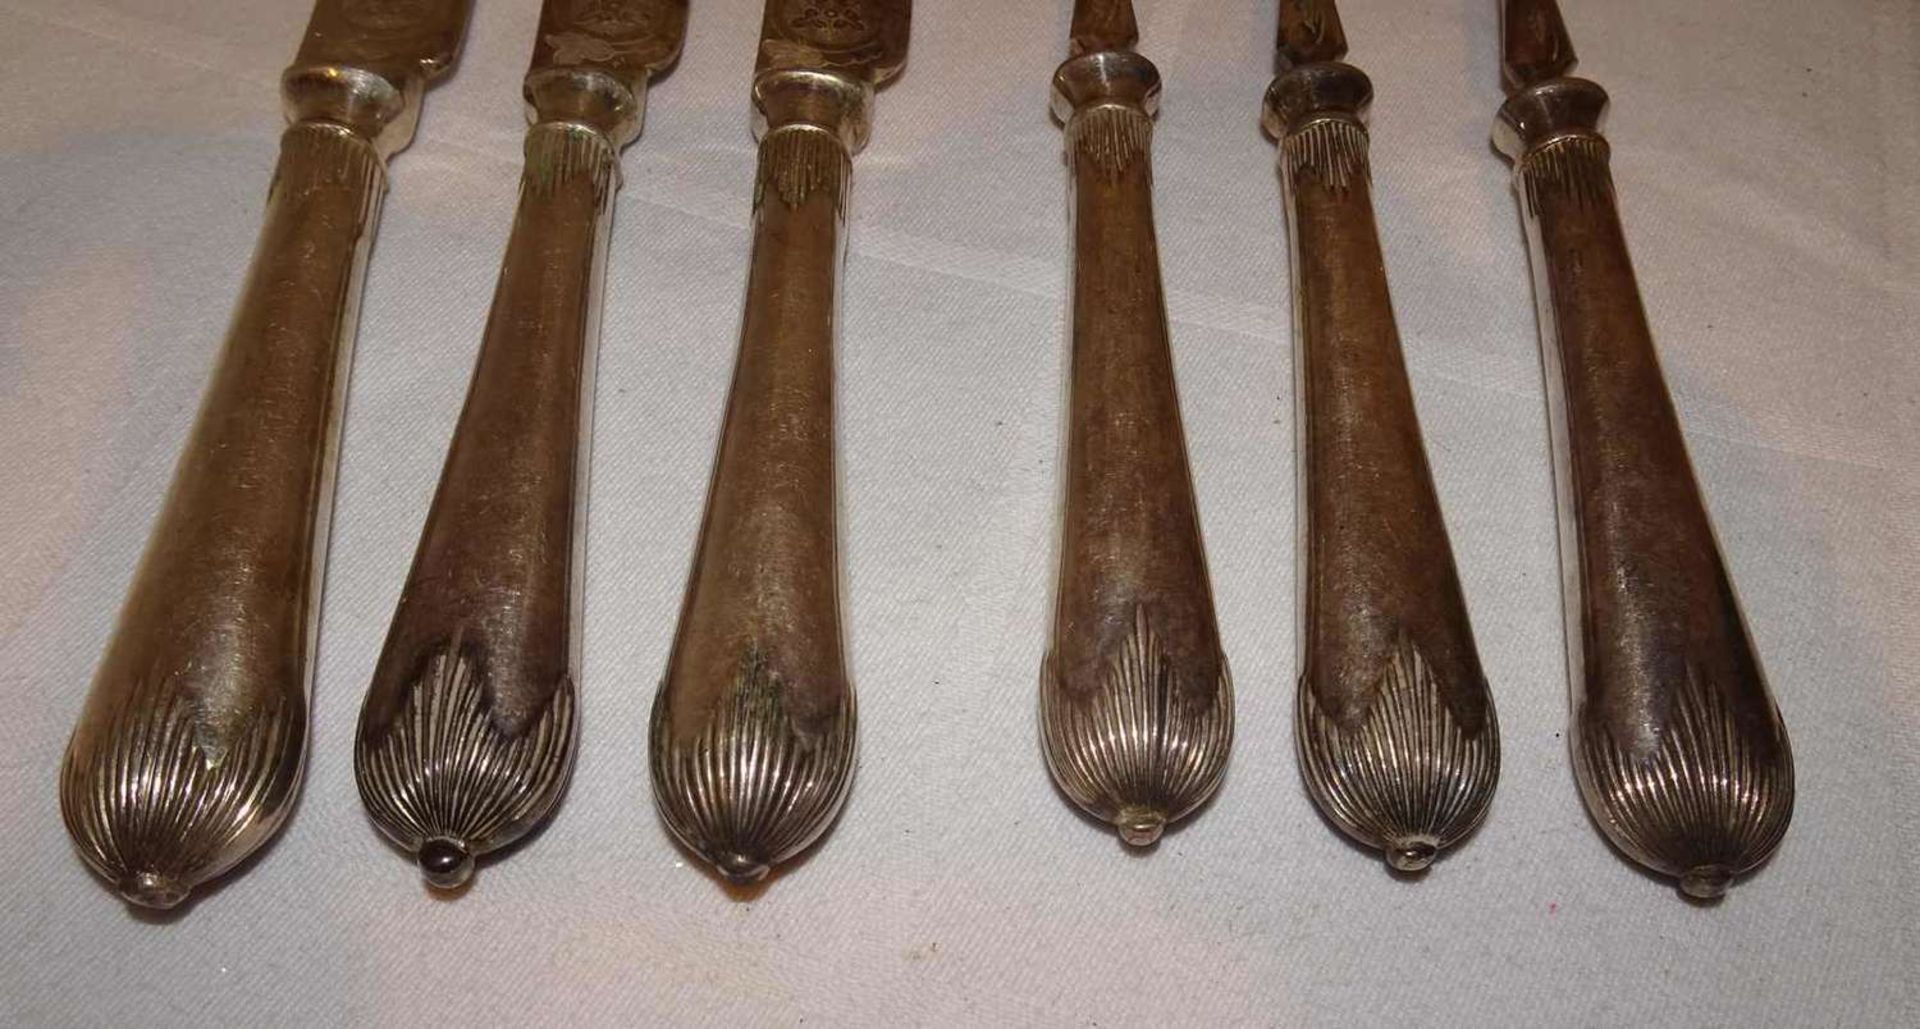 Elkington Jugendstil Besteckteile, feine Zisielierung, bestehend aus 3 Messer und 3 Gabeln.Elkingto - Image 2 of 2